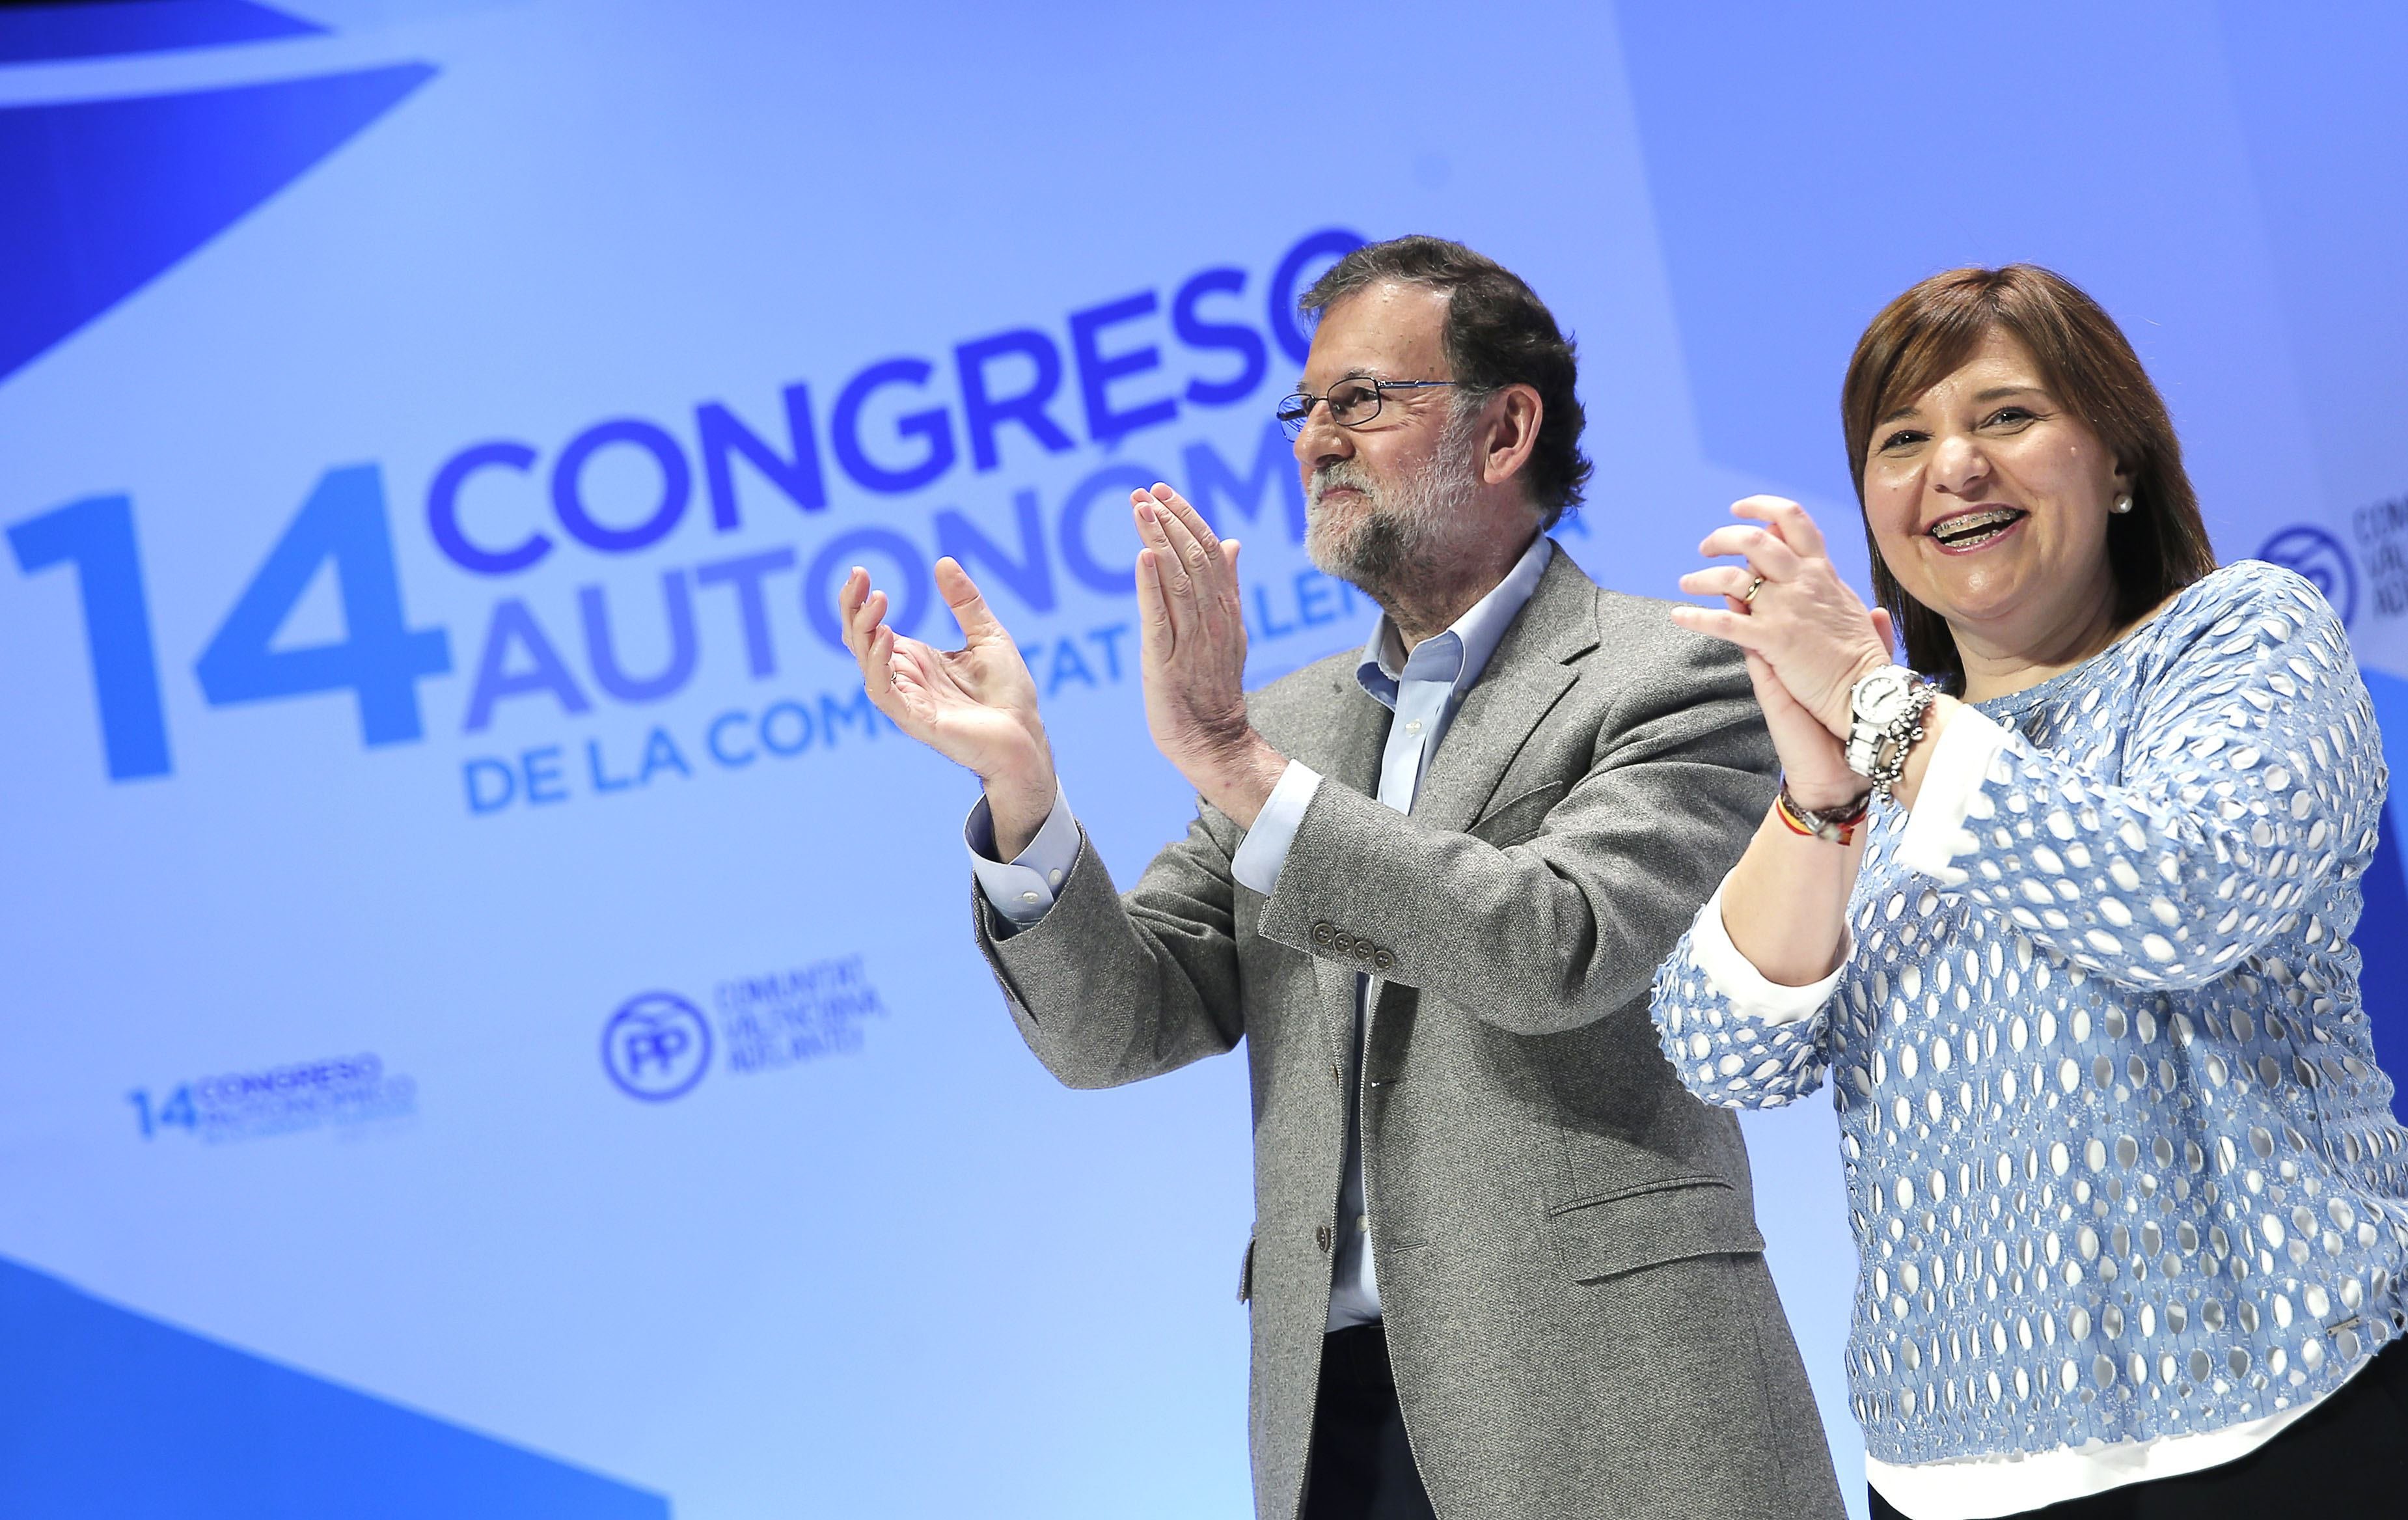 Bonig reclama inversiones a Rajoy para evitar el "contagio del separatismo"